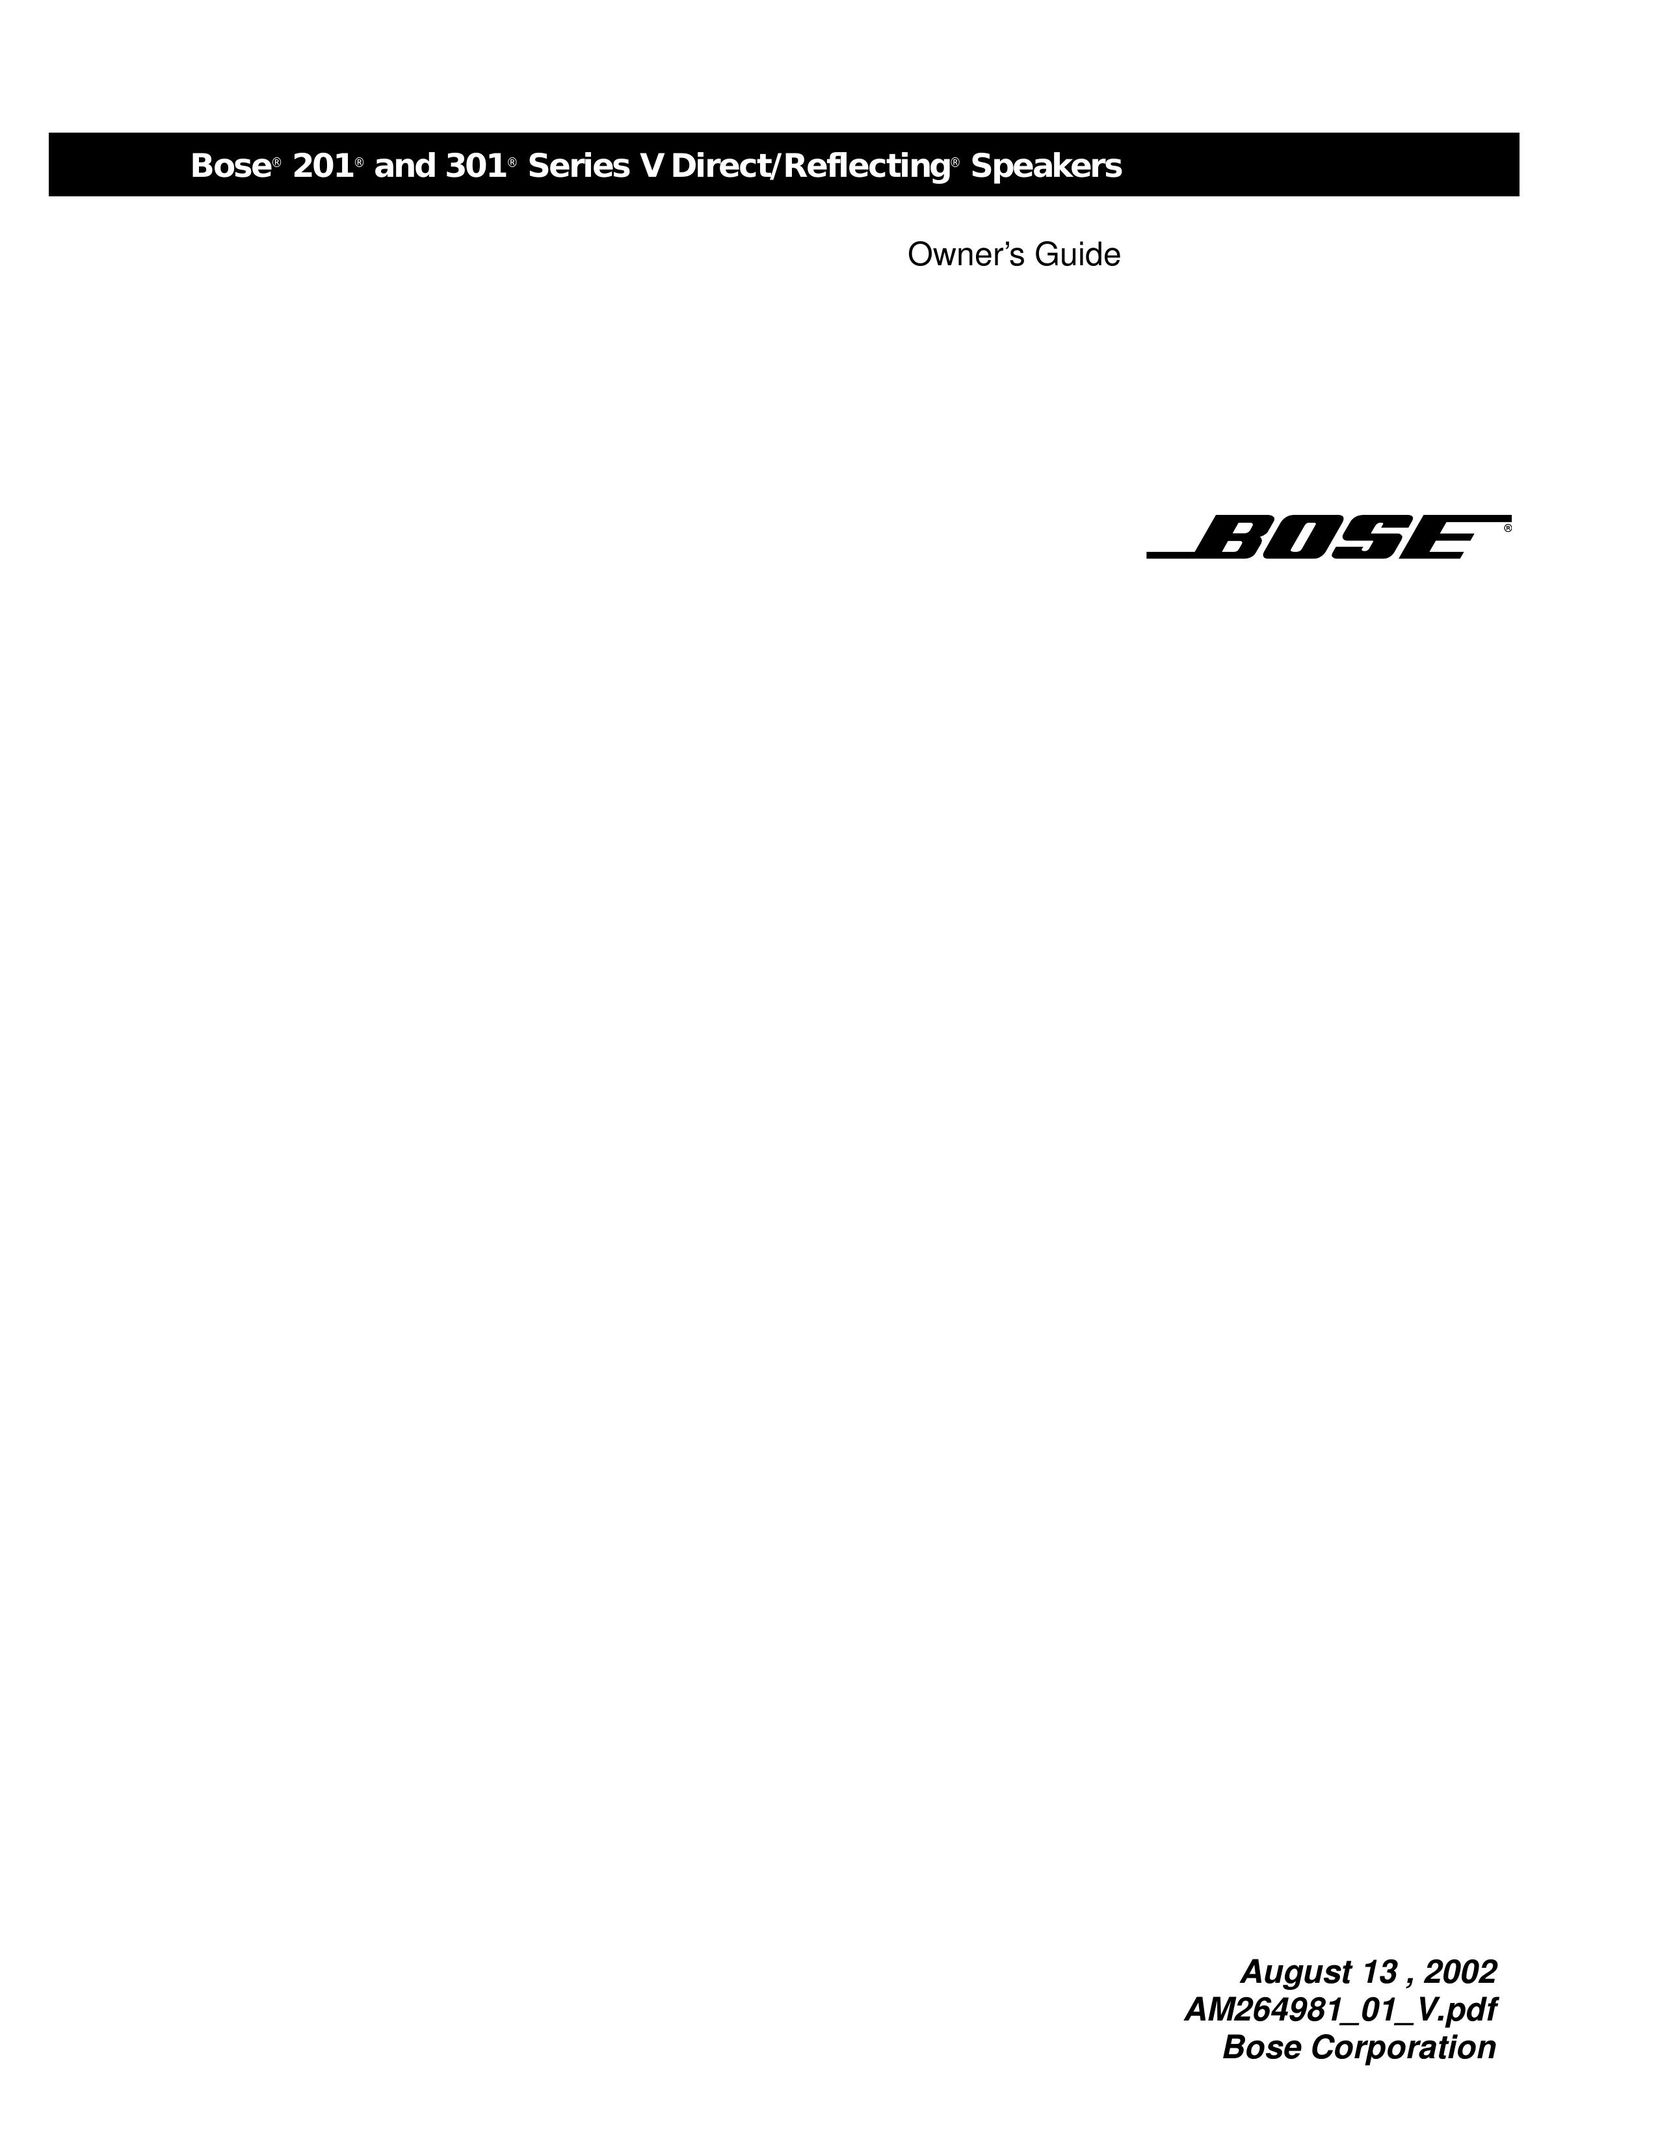 Bose 301 Car Speaker User Manual